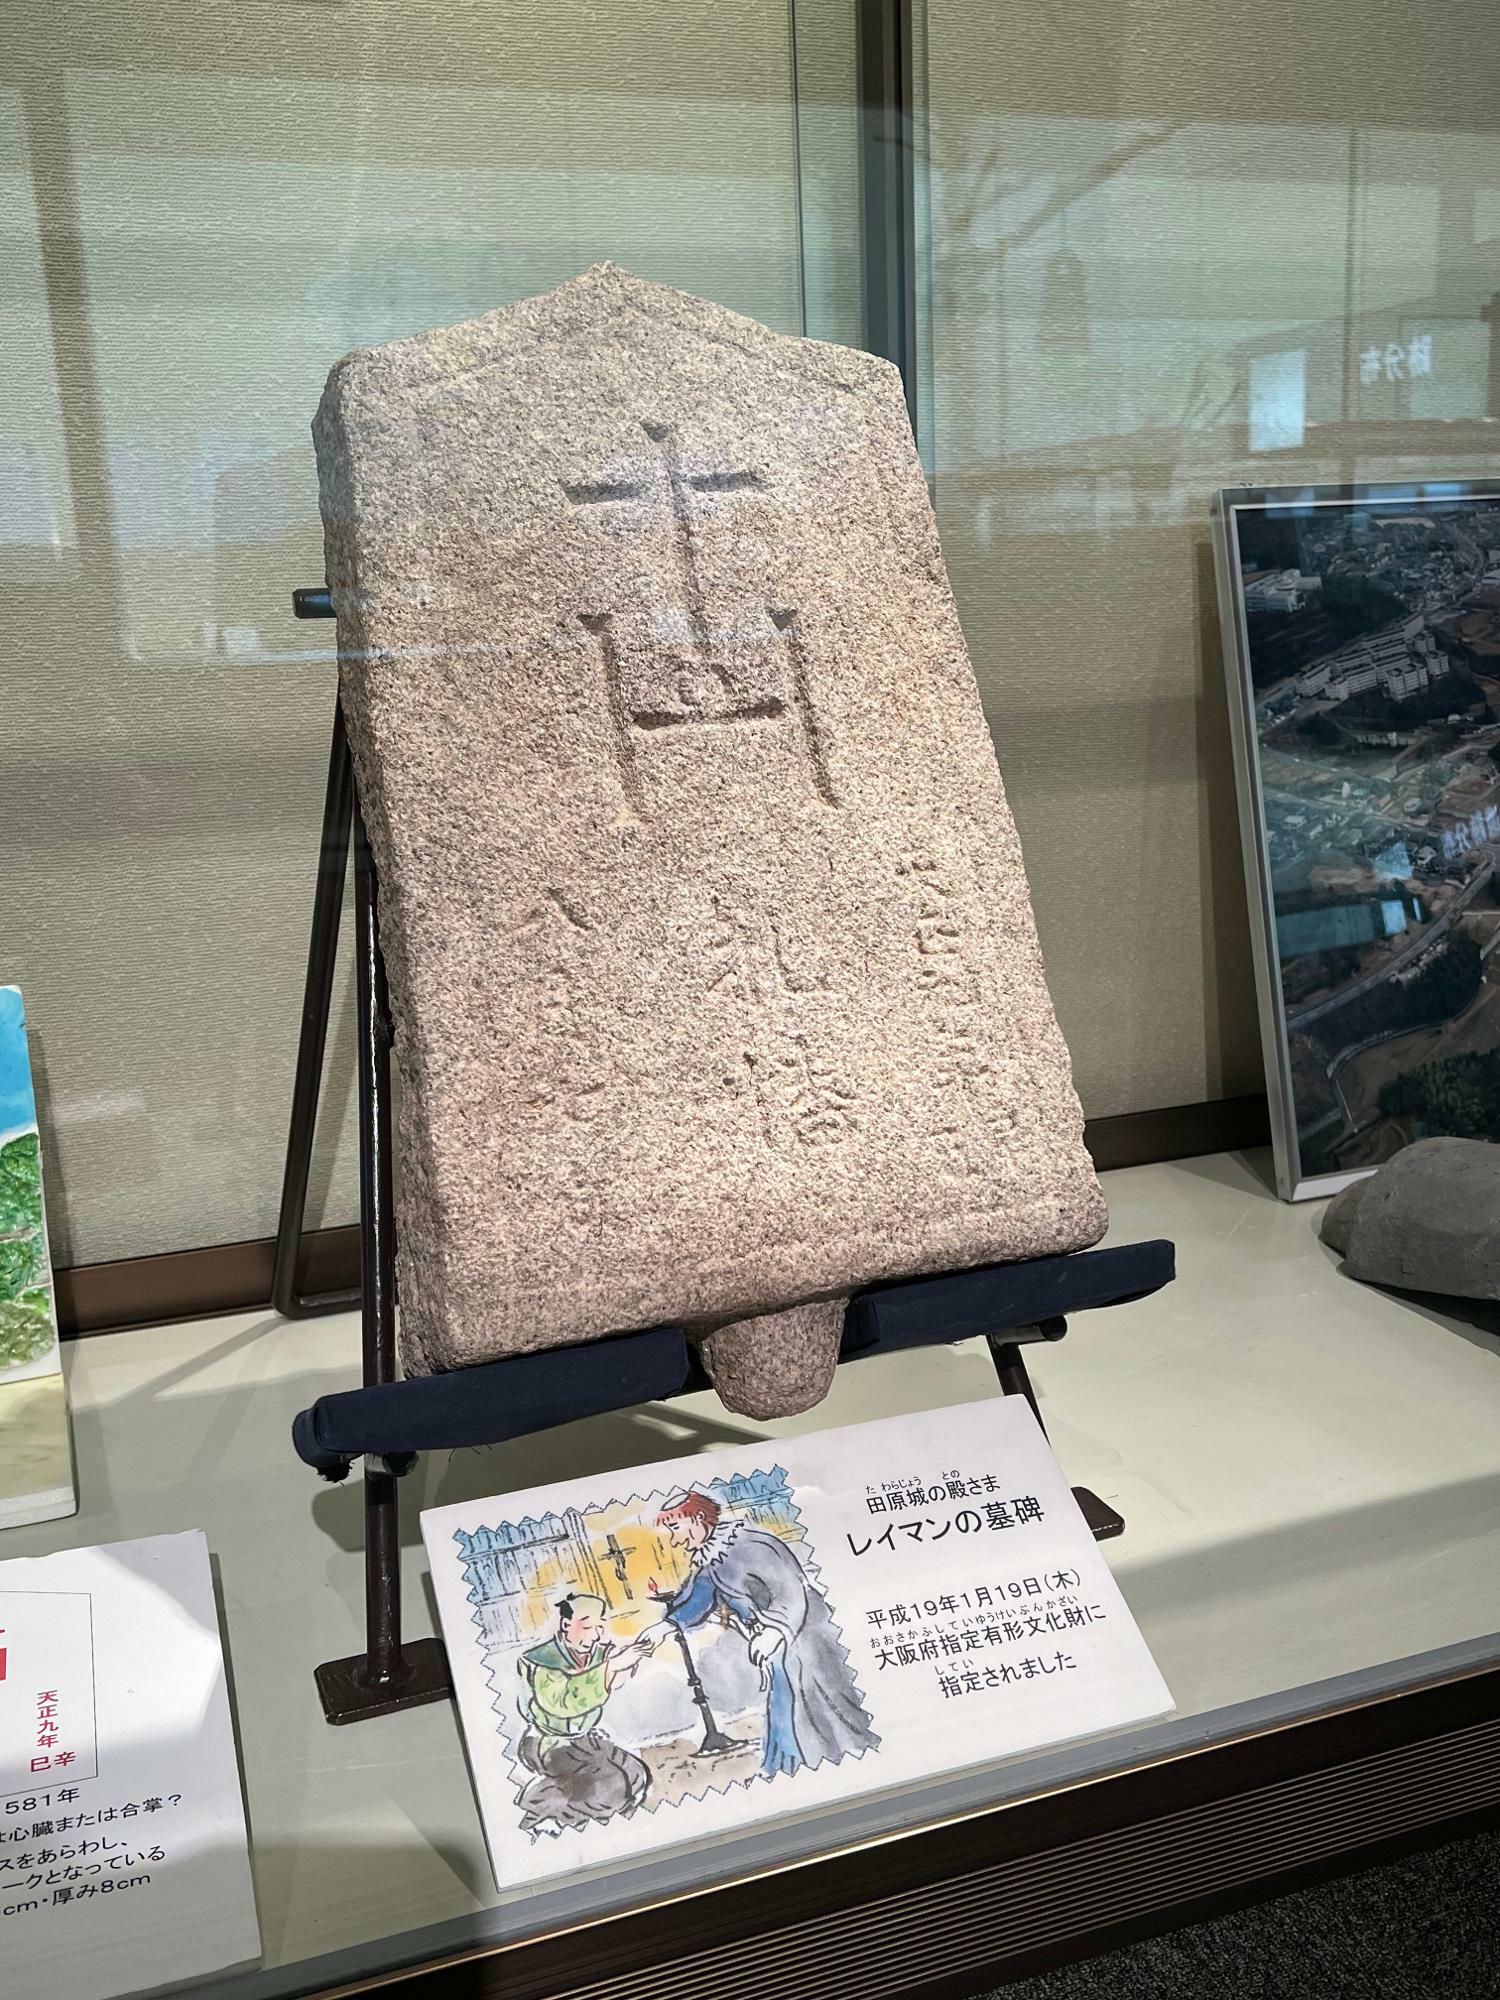 田原城主・田原レイマンの墓碑。キリシタン墓碑としては日本最古